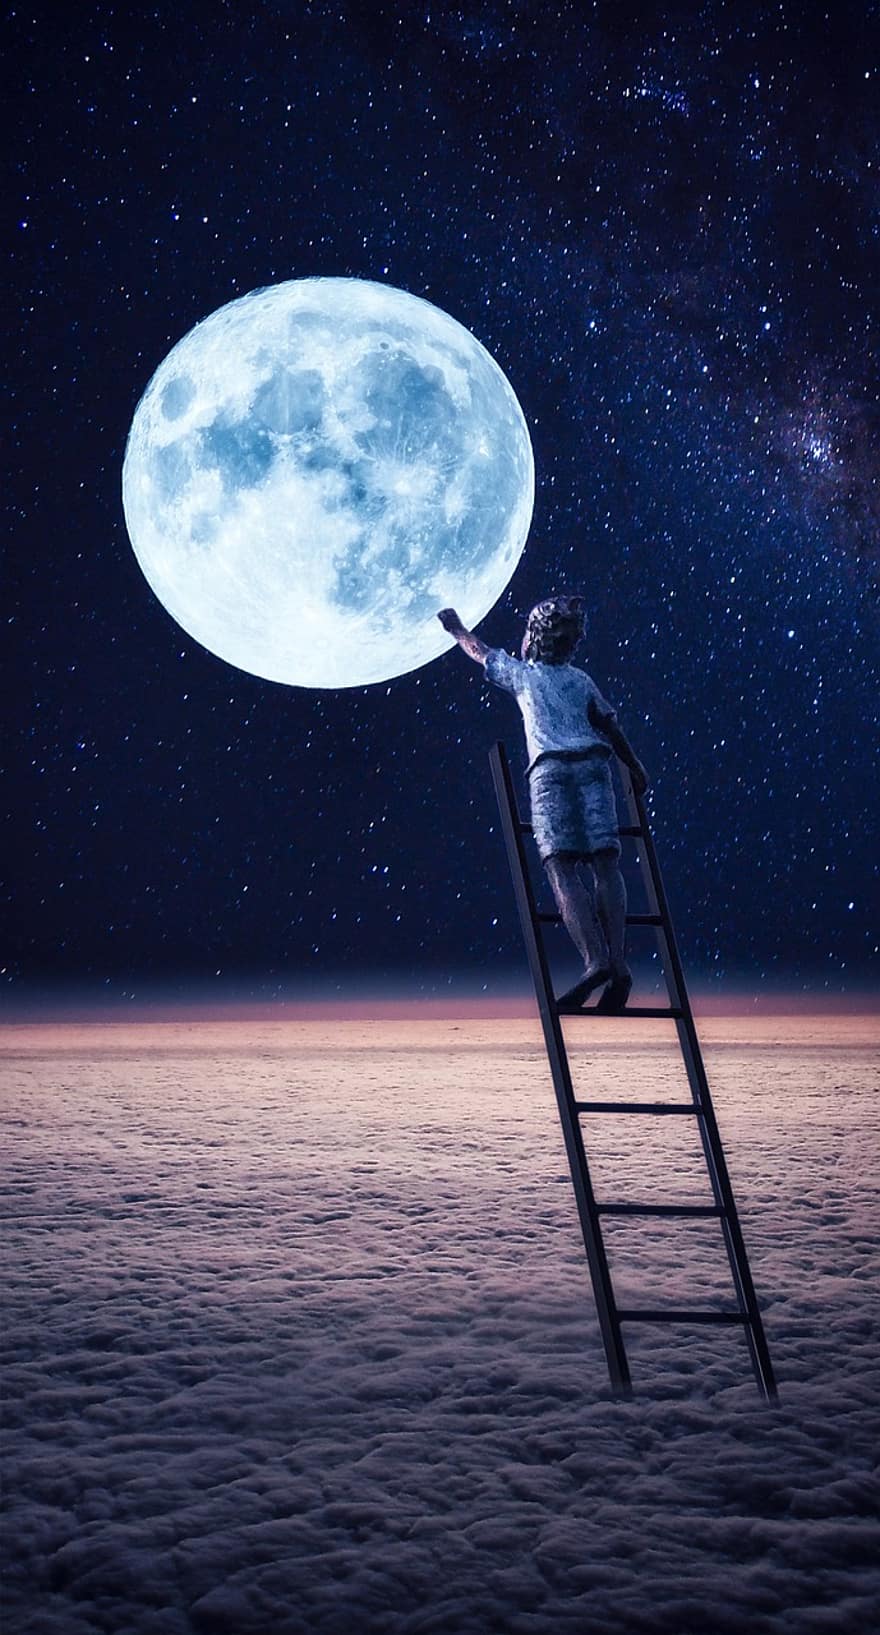 mặt trăng, đêm, thang, đứa trẻ, những đám mây, mơ, đàn ông, không gian, ngân hà, thiên văn học, tối